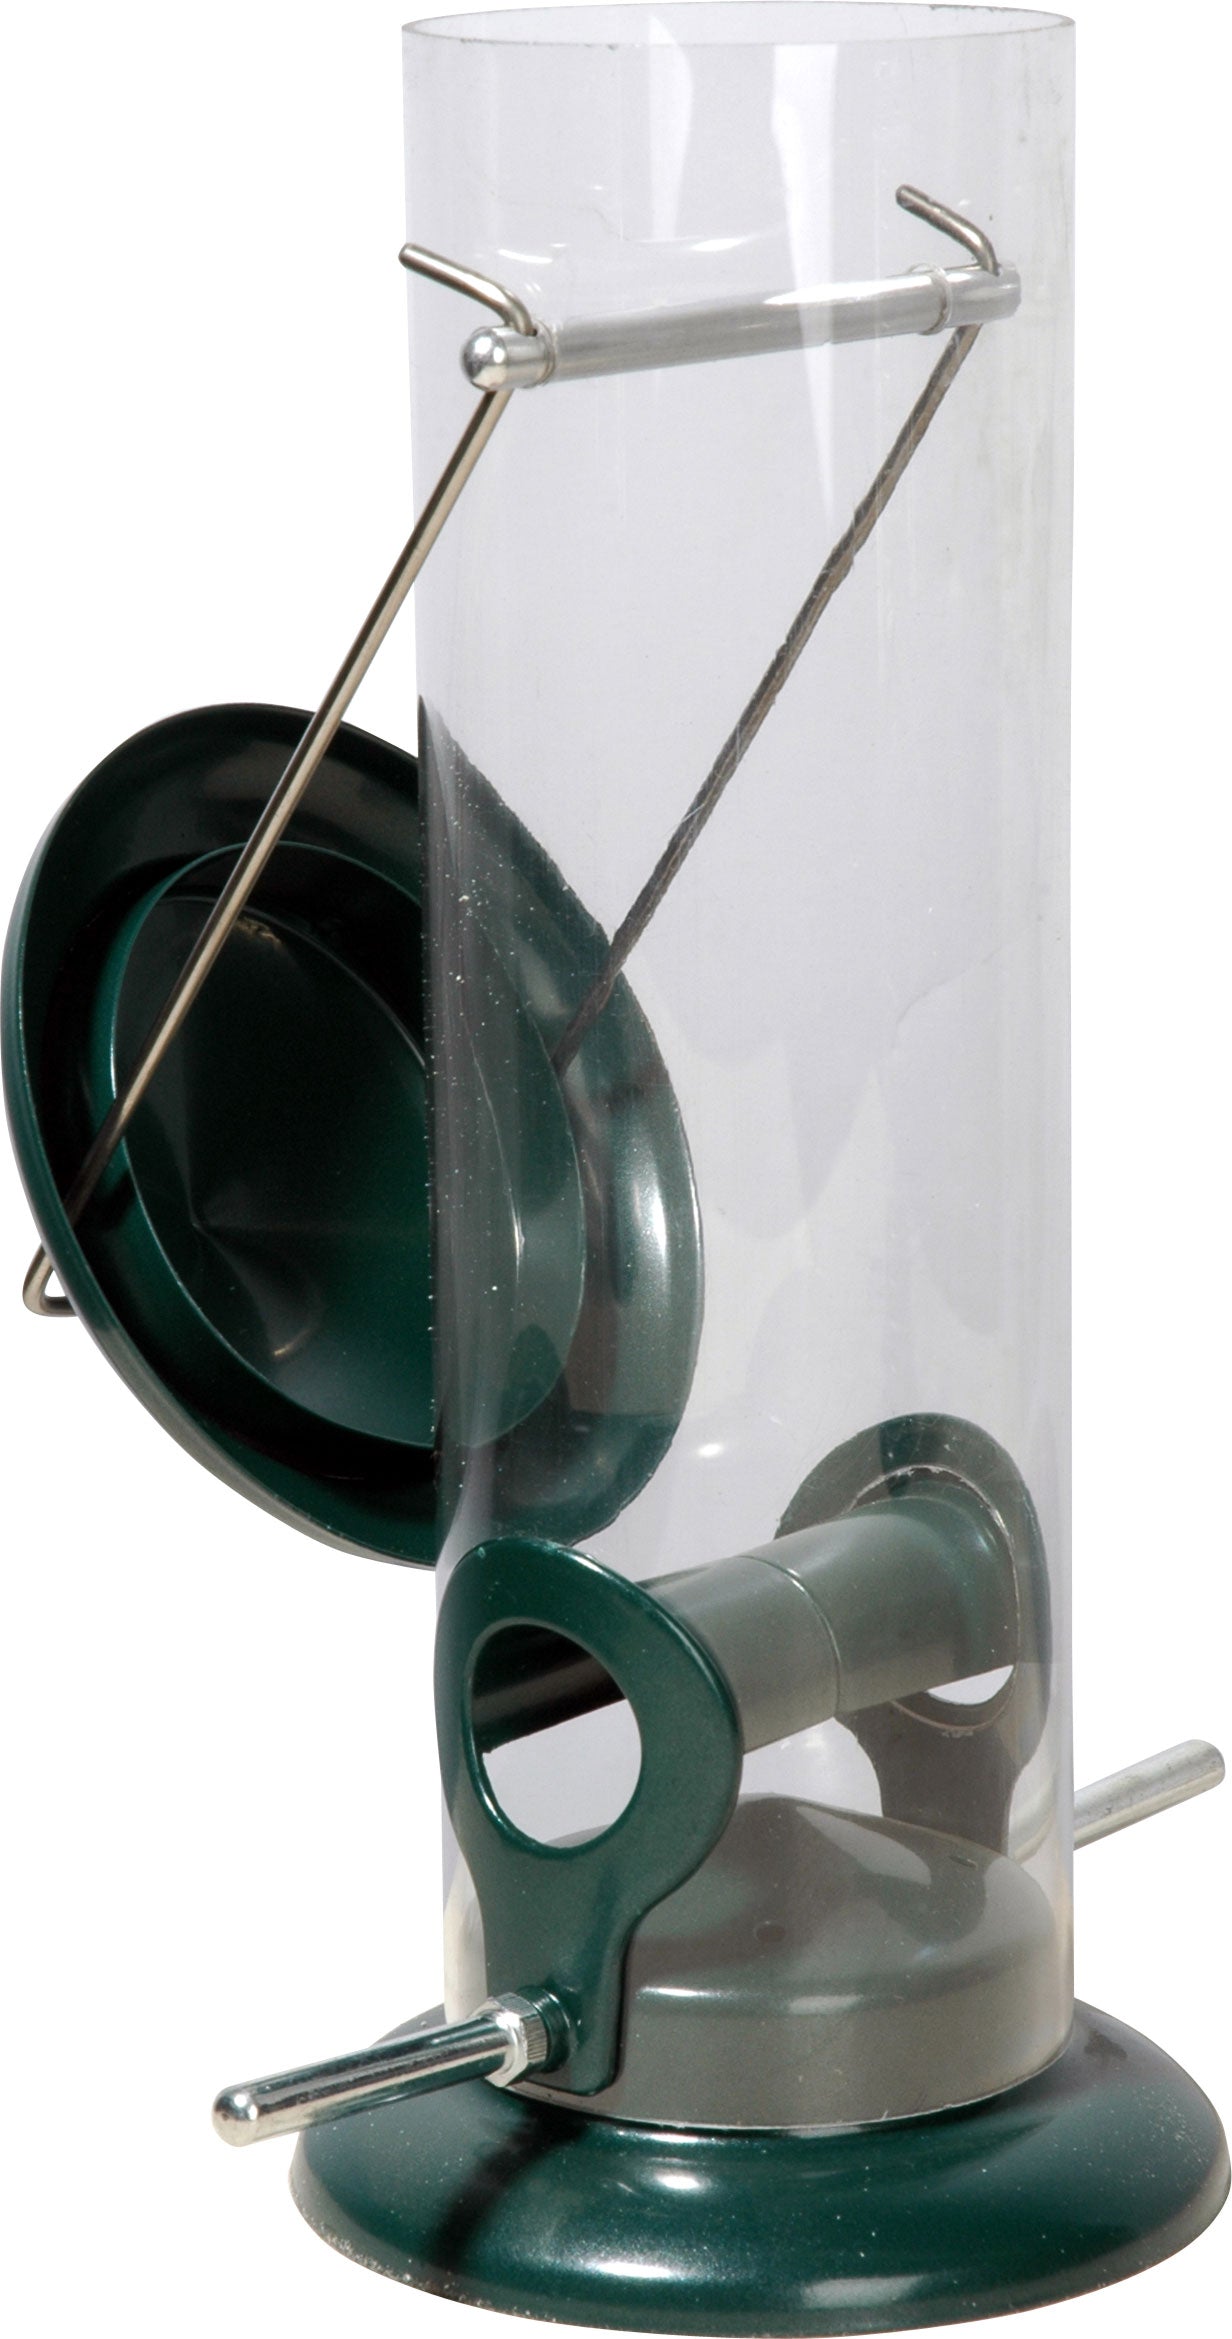 Art. 11516 - Futterspender mit Acrylglasröhre zum Aufhängen